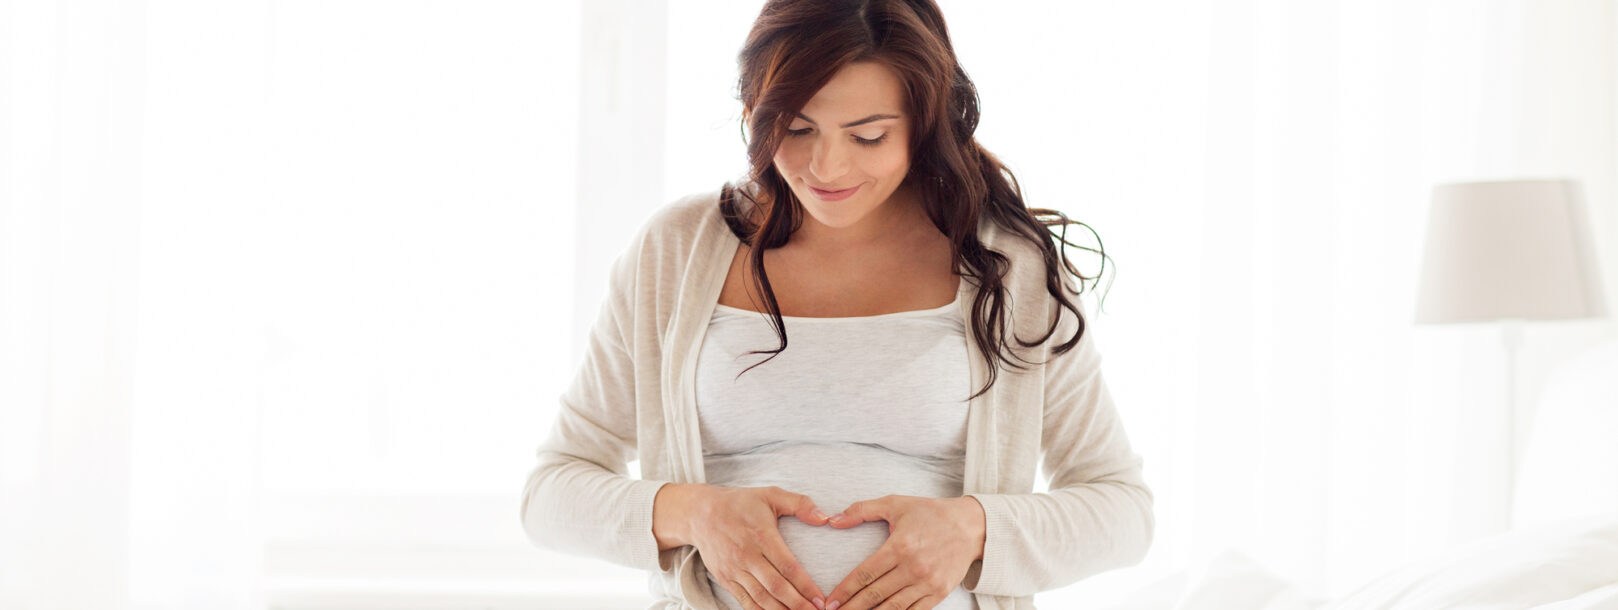 Guide til graviditetsmassage